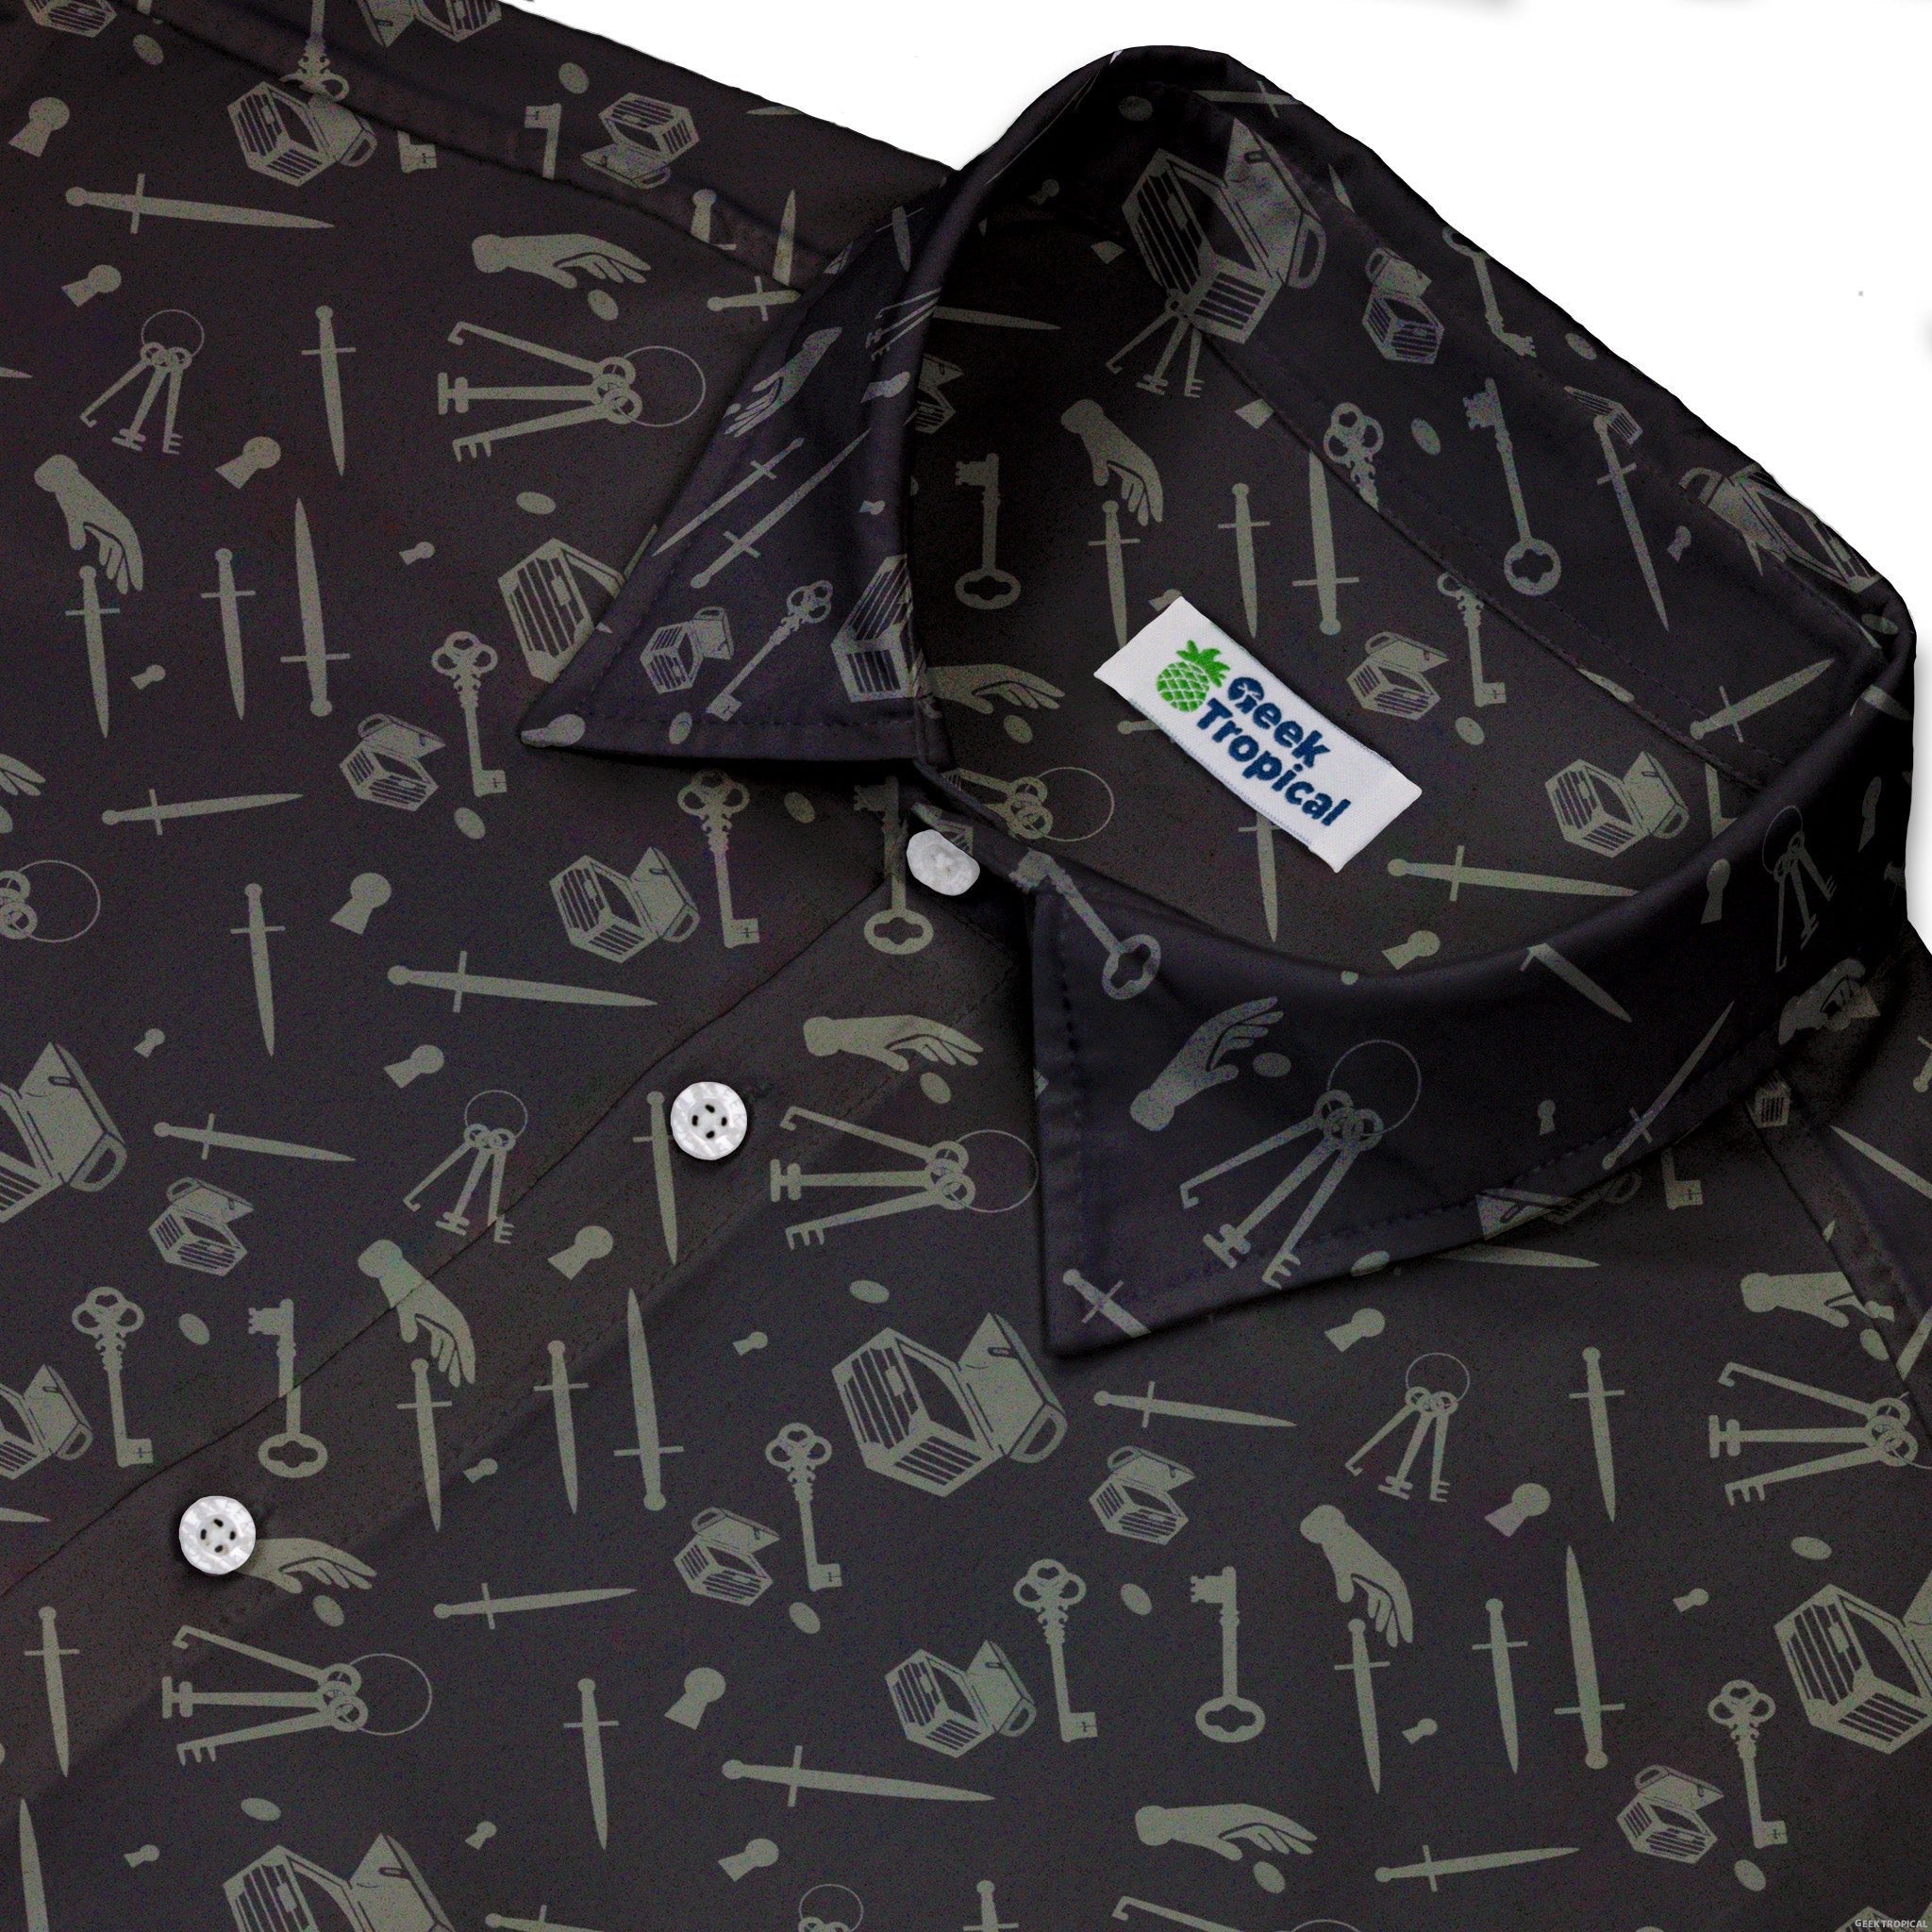 Dnd Rogue Class Button Up Shirt - adult sizing - Design by Heather Davenport - dnd & rpg print